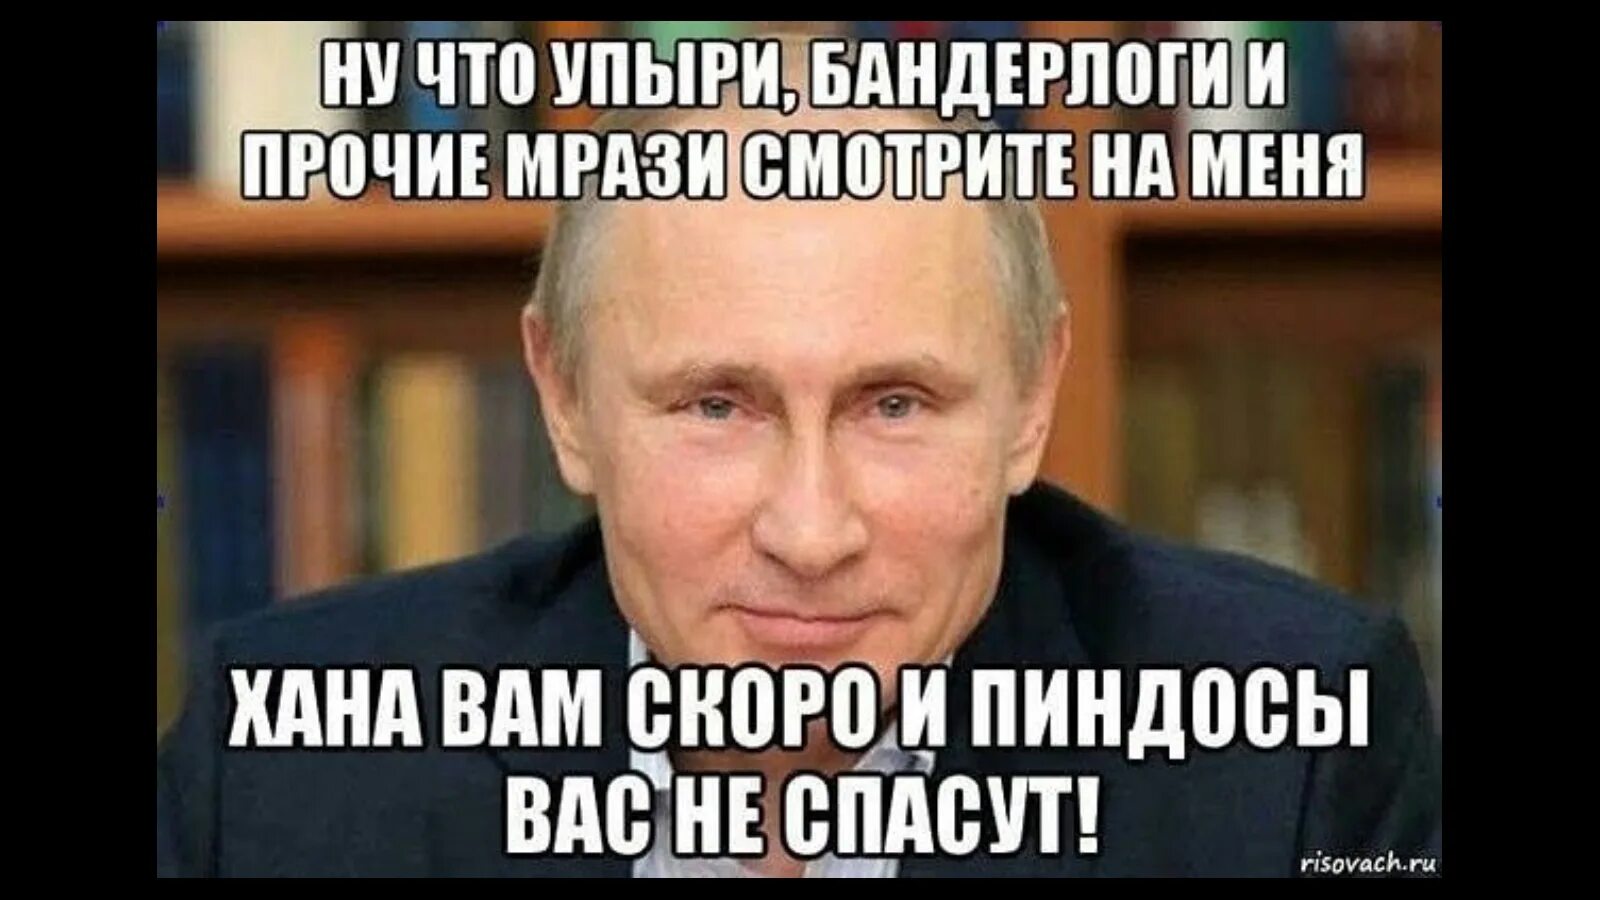 Мемы про пиндосов. Мемы с Путиным и Хохлов. Из всех пролетариев самая гнусная мразь